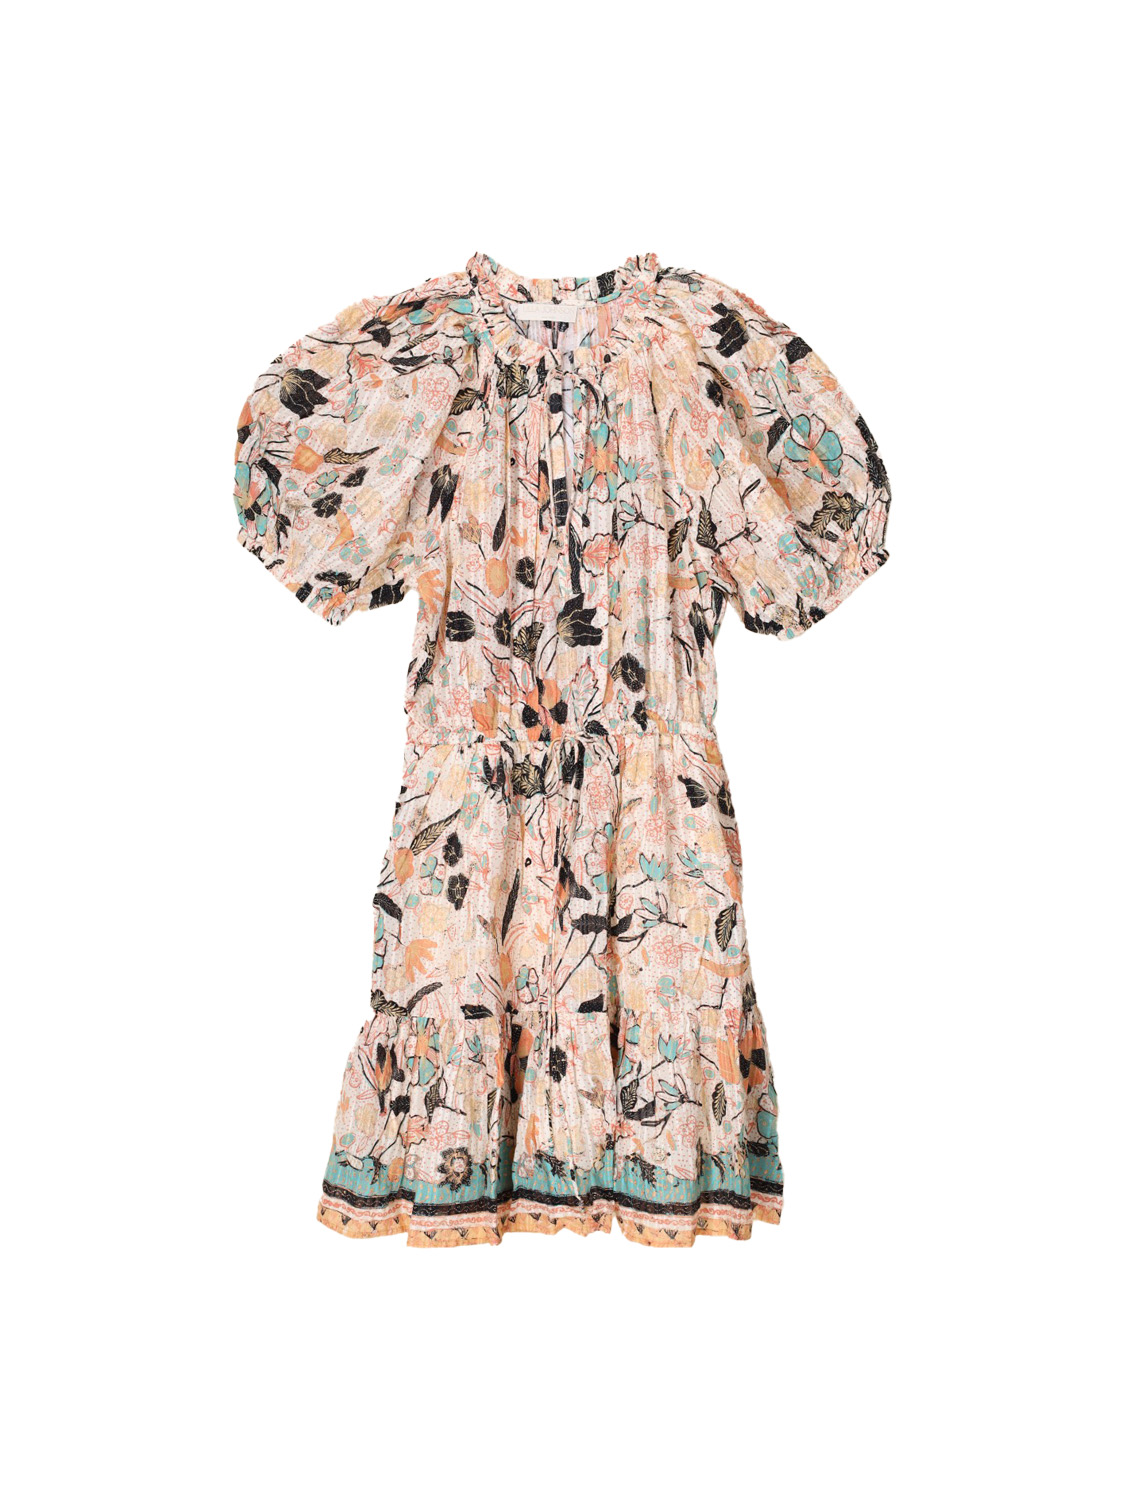 Sanna – Lightweight dress with a floral design 